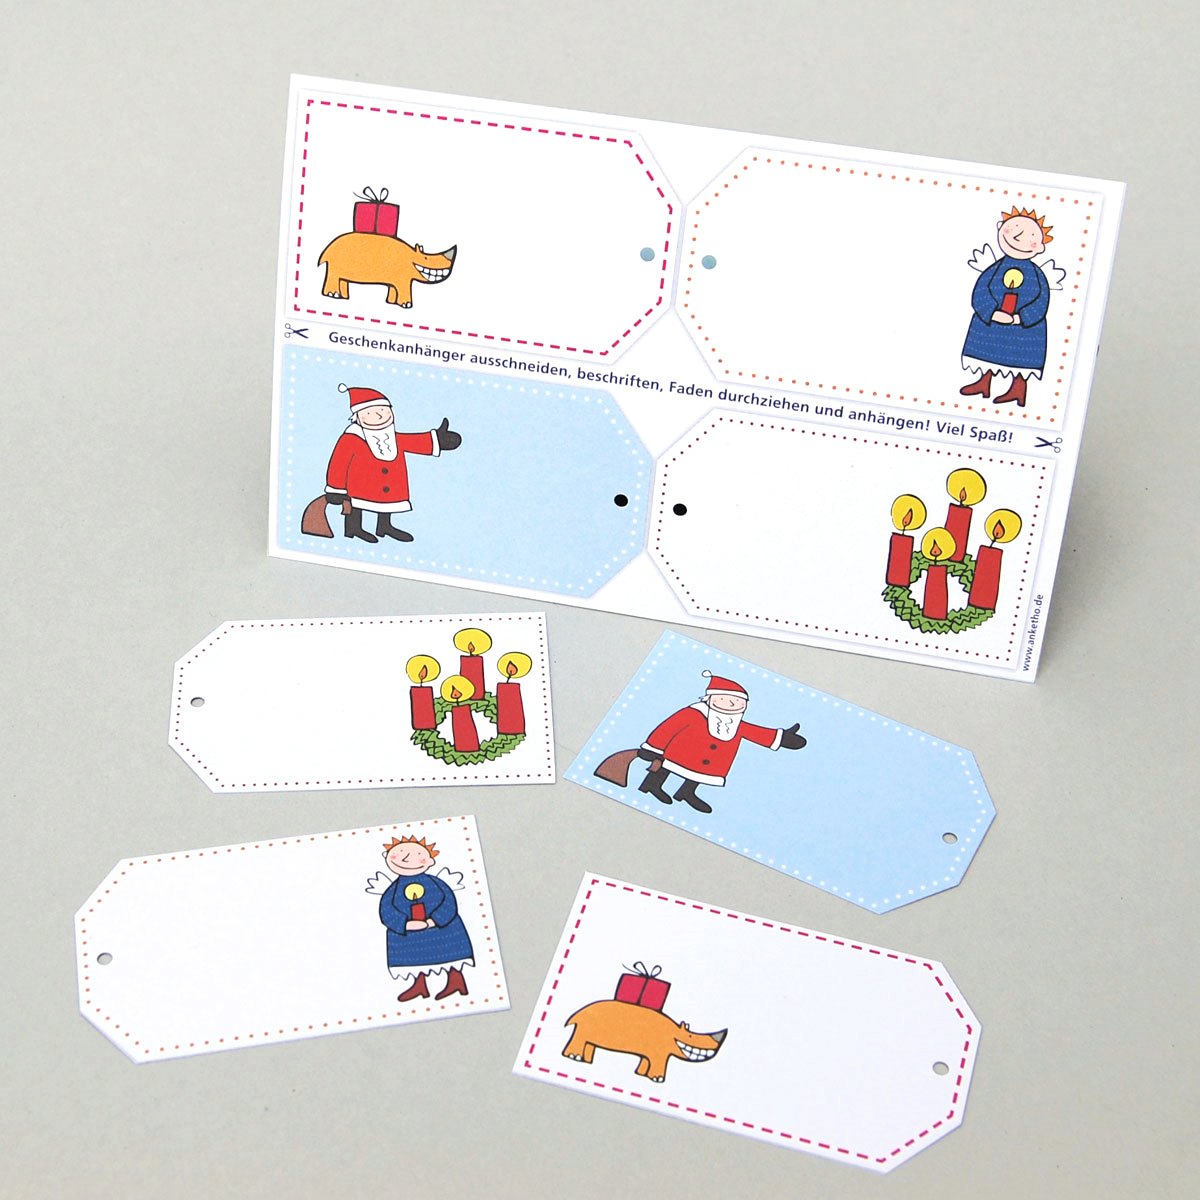 Nashorn, Engel mit Kerze, Weihnachtsmann und Adventskranz, vier gelochte Recycling-Geschenkanhänger zum Ausschneiden: Postkarte